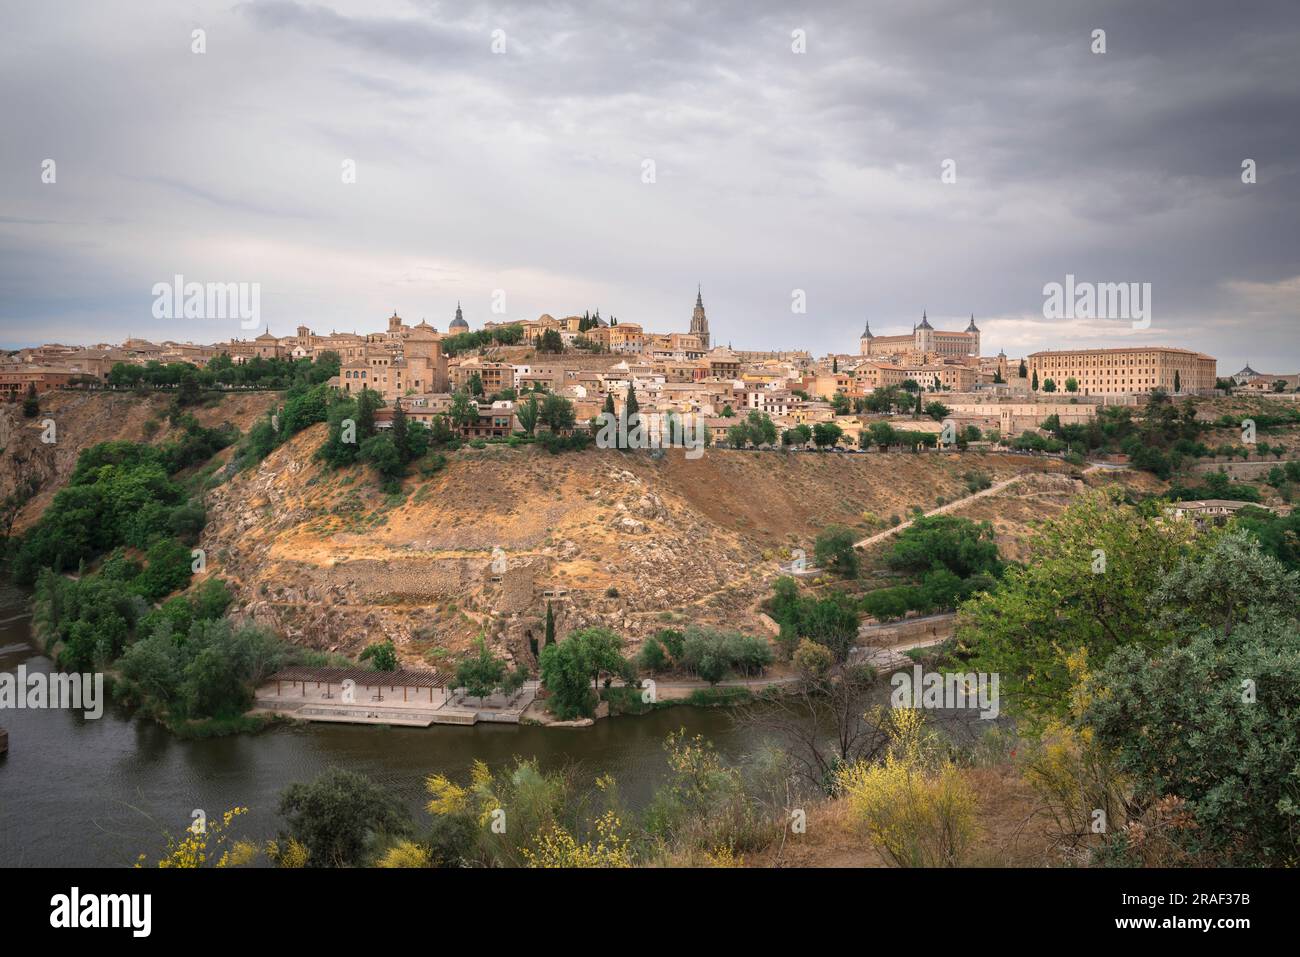 Tolède ville, vue dans la lumière dramatique de la ville historique de Tolède situé sur une colline au-dessus du fleuve Tage, Espagne centrale Banque D'Images